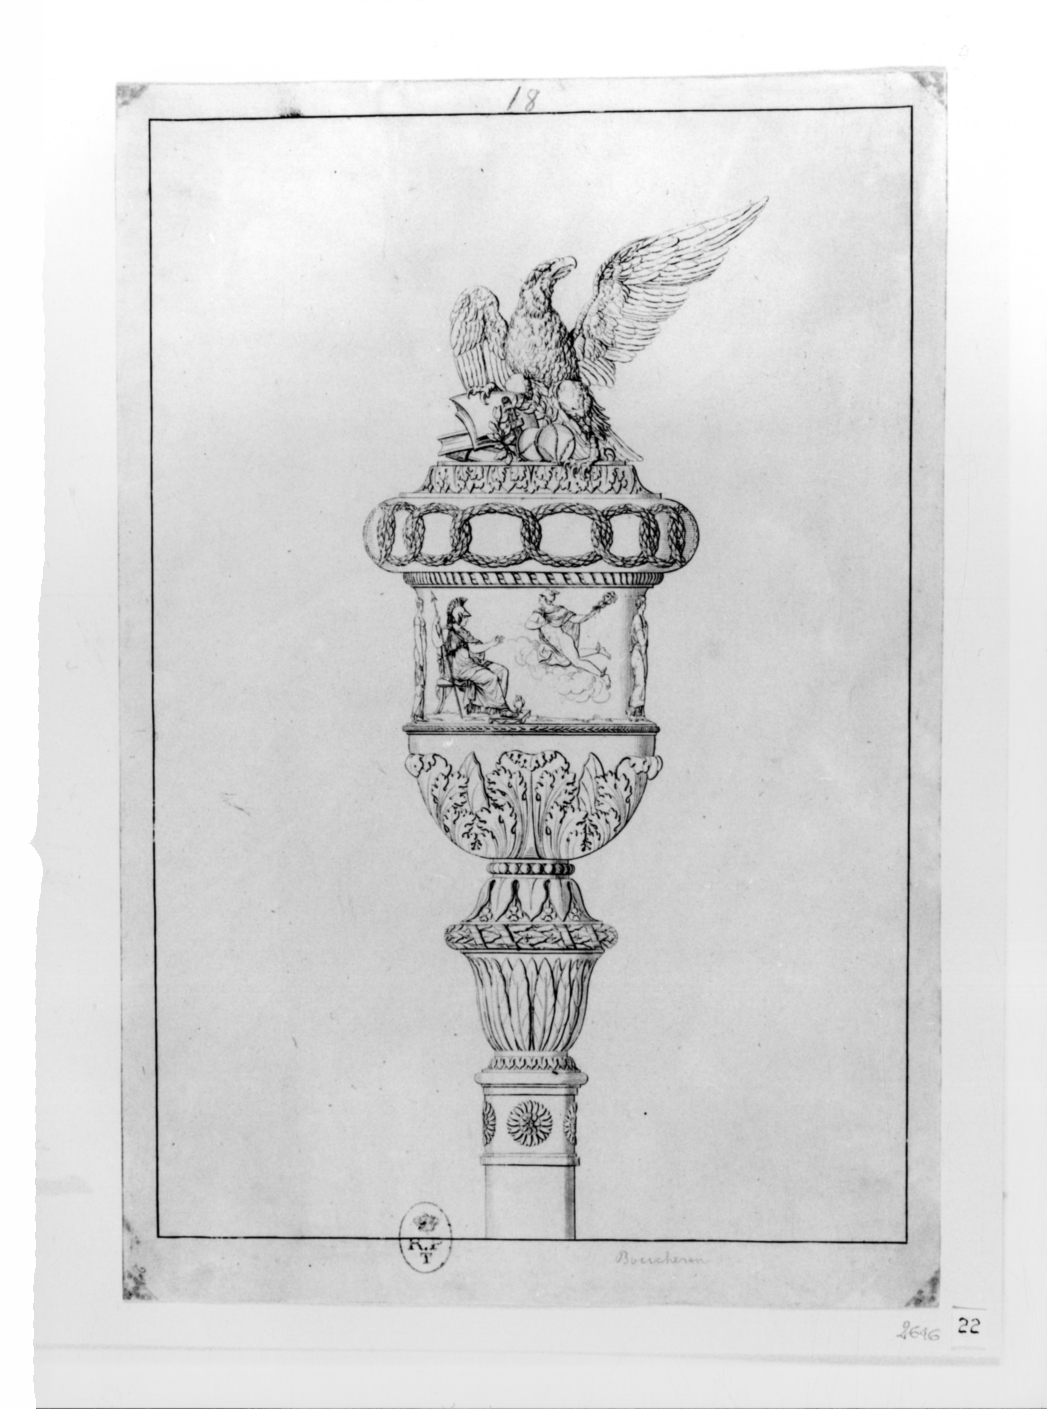 Mazza da cerimonia del rettore dell'Università di Torino (stampa, elemento d'insieme) di Pécheux Lorenzo, Boucheron Angelo Michele (inizio sec. XIX)